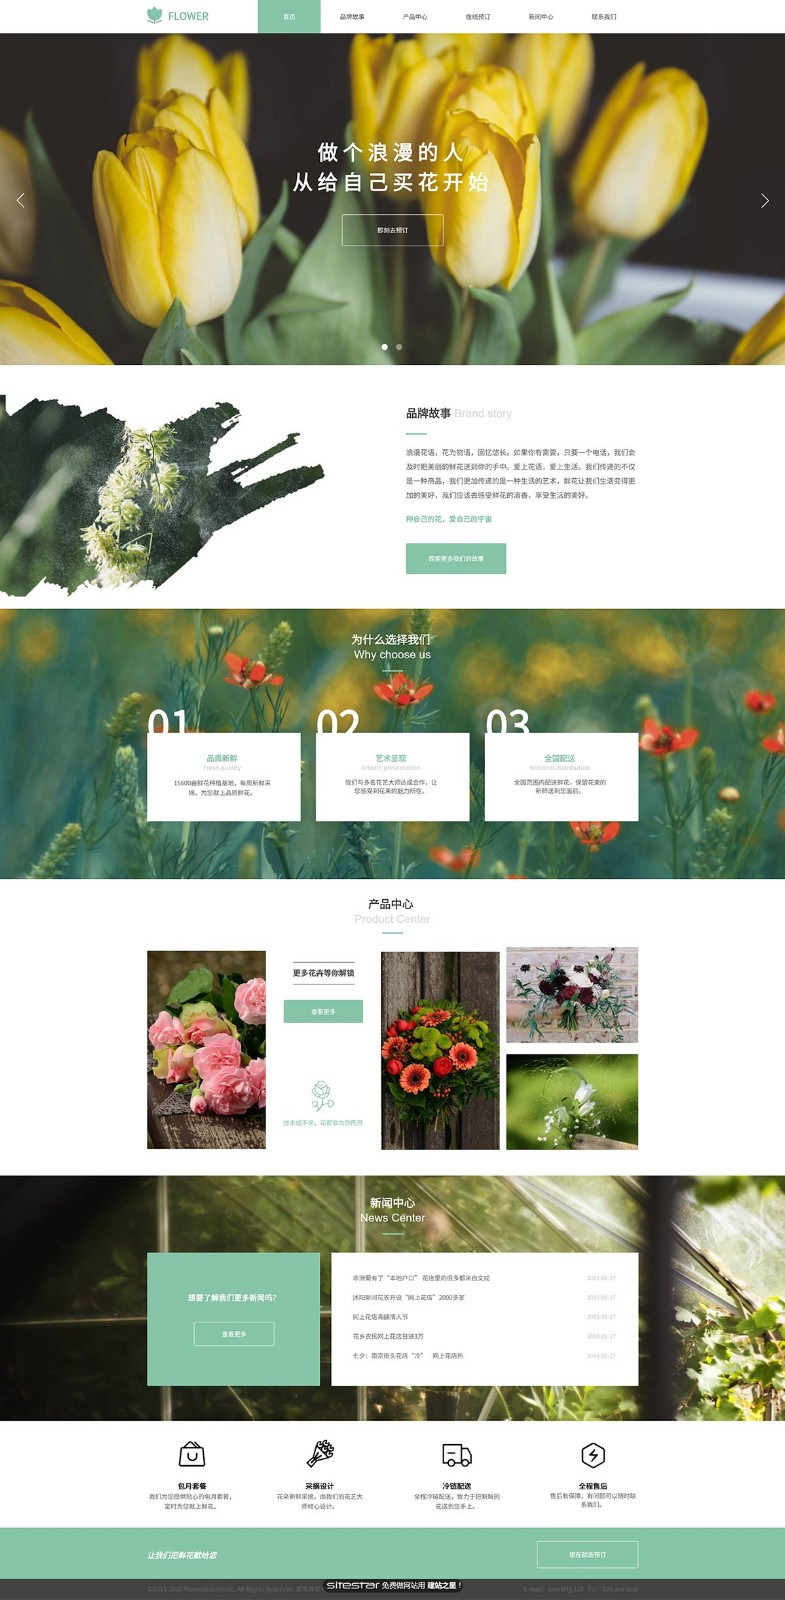 企业网站精美模板-flowers-1130380